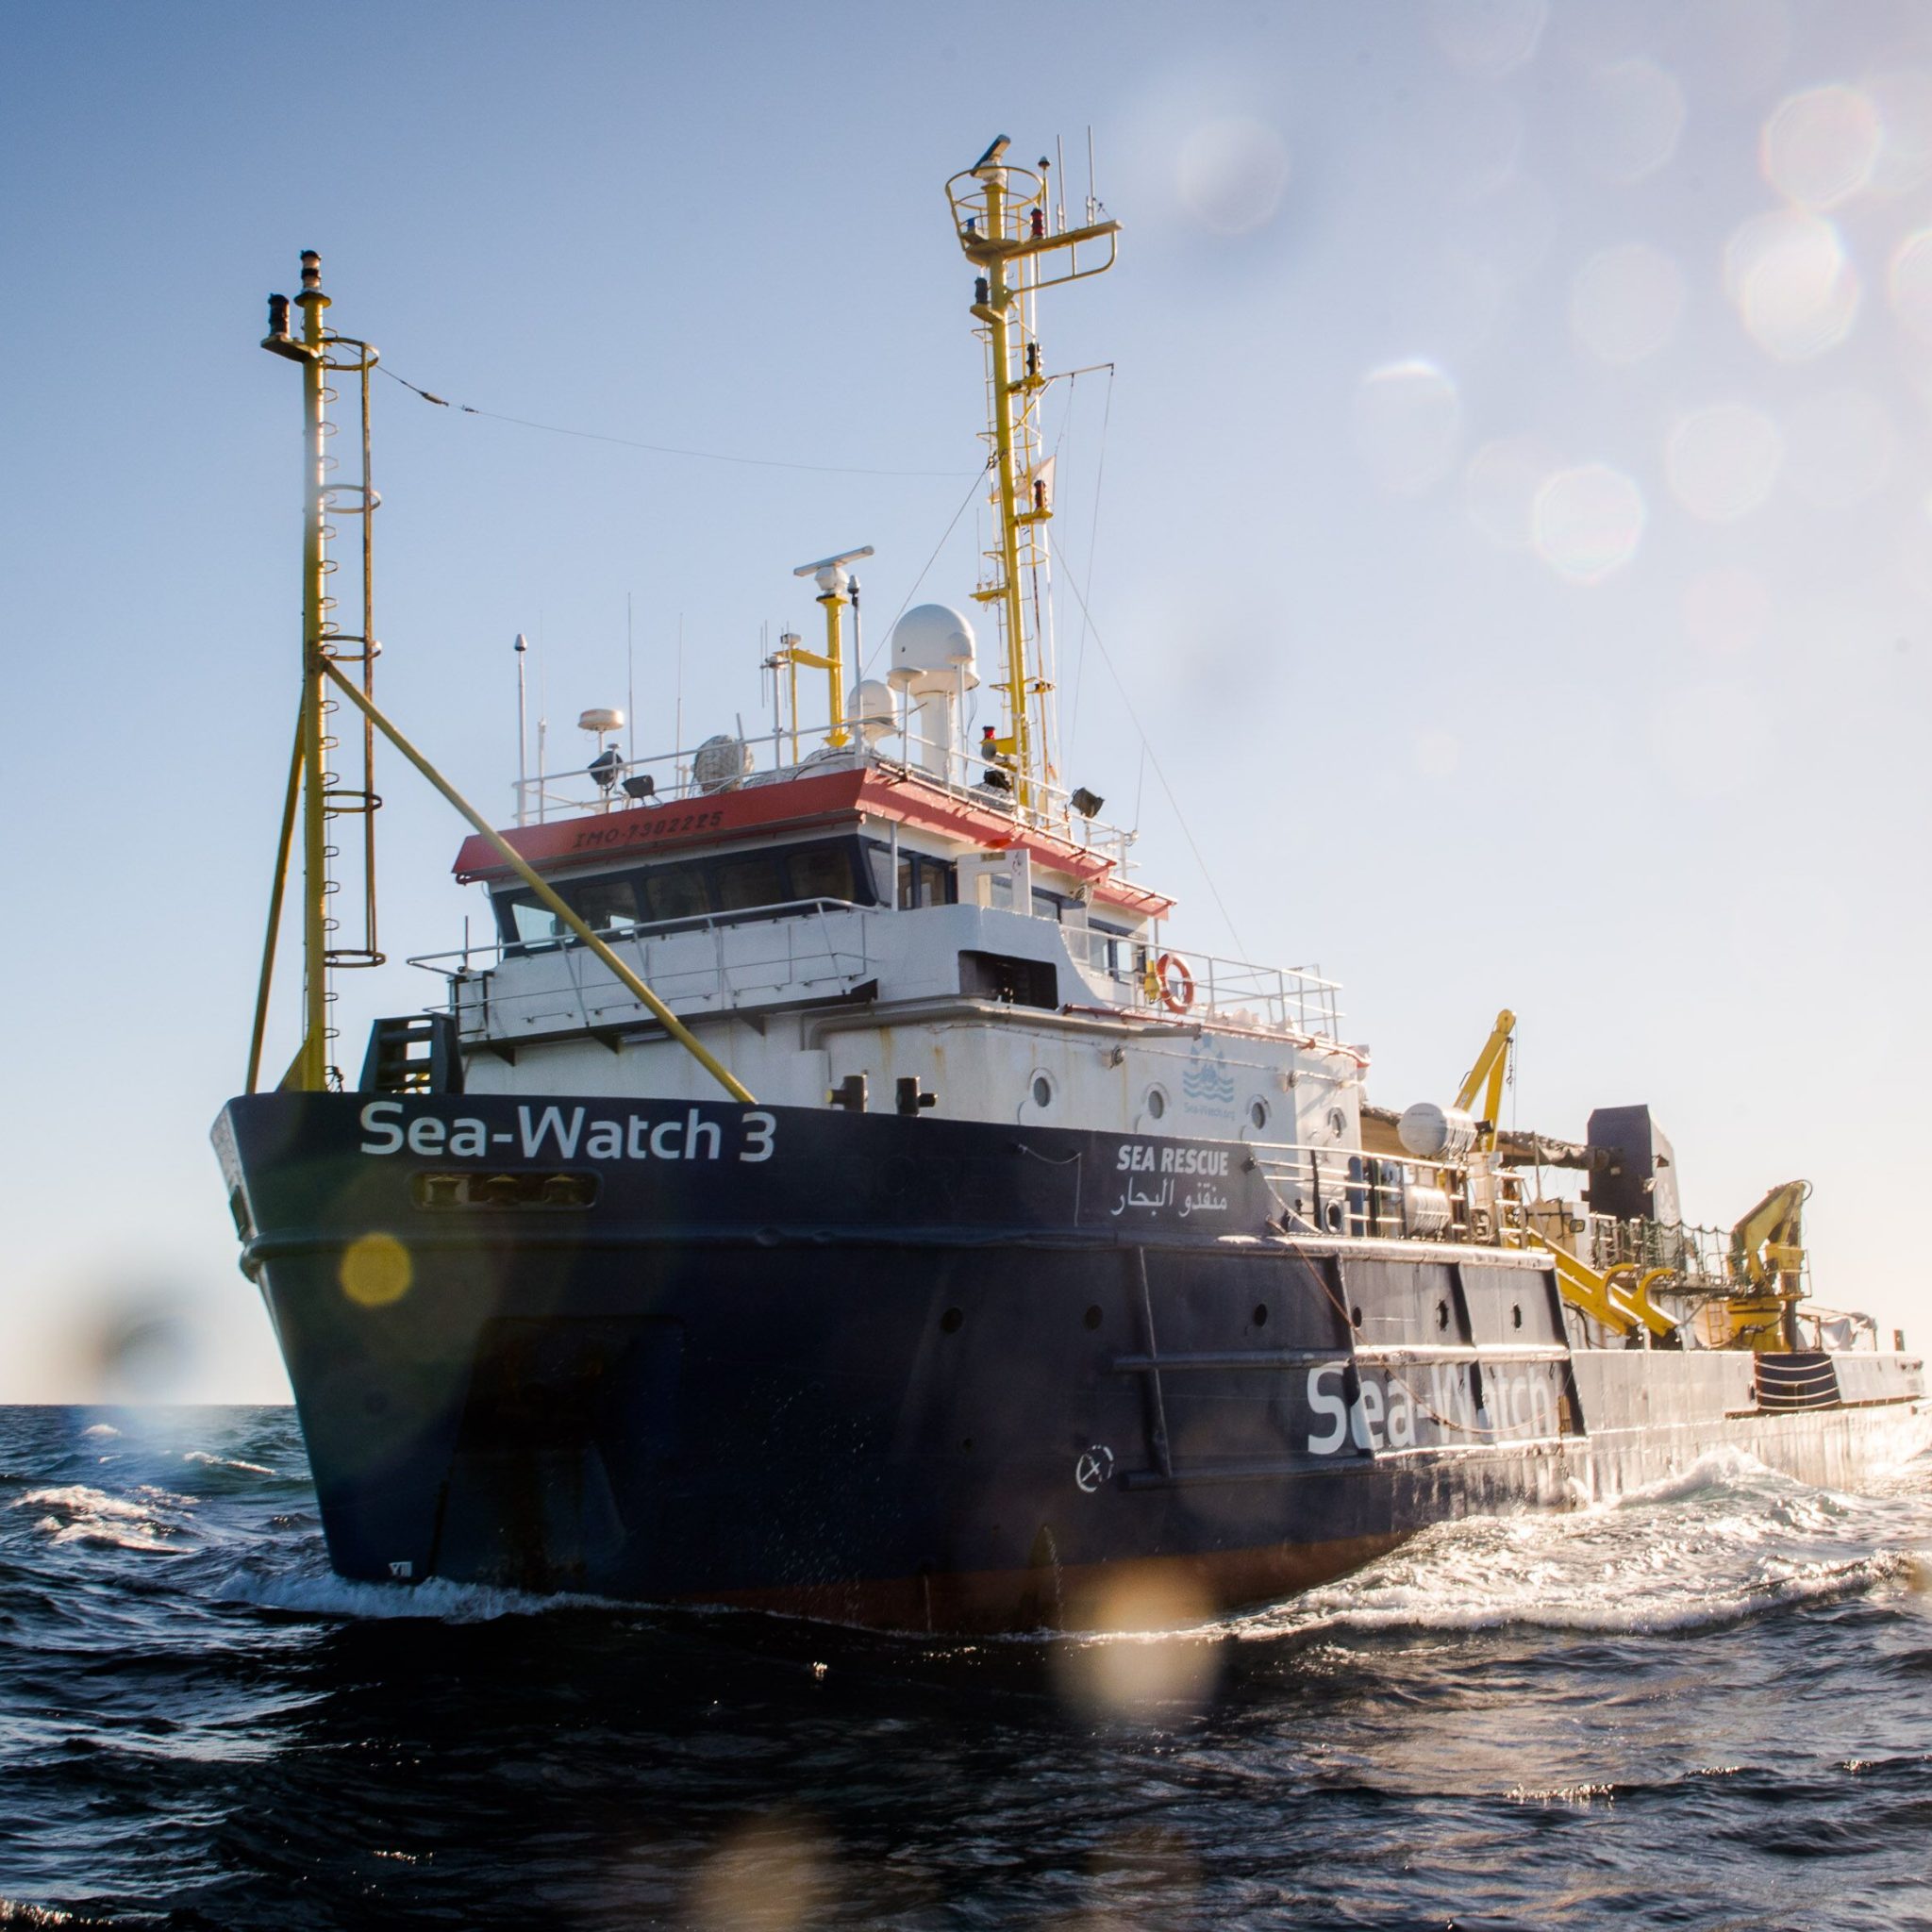 De Sea-Watch 3 moet voor het redden van vluchtelingen op de Middellandse Zee uiterlijk 31 december 2019 gecertificeerd zijn volgens de nieuwe eisen. (Archieffoto Sea-Watch.org)